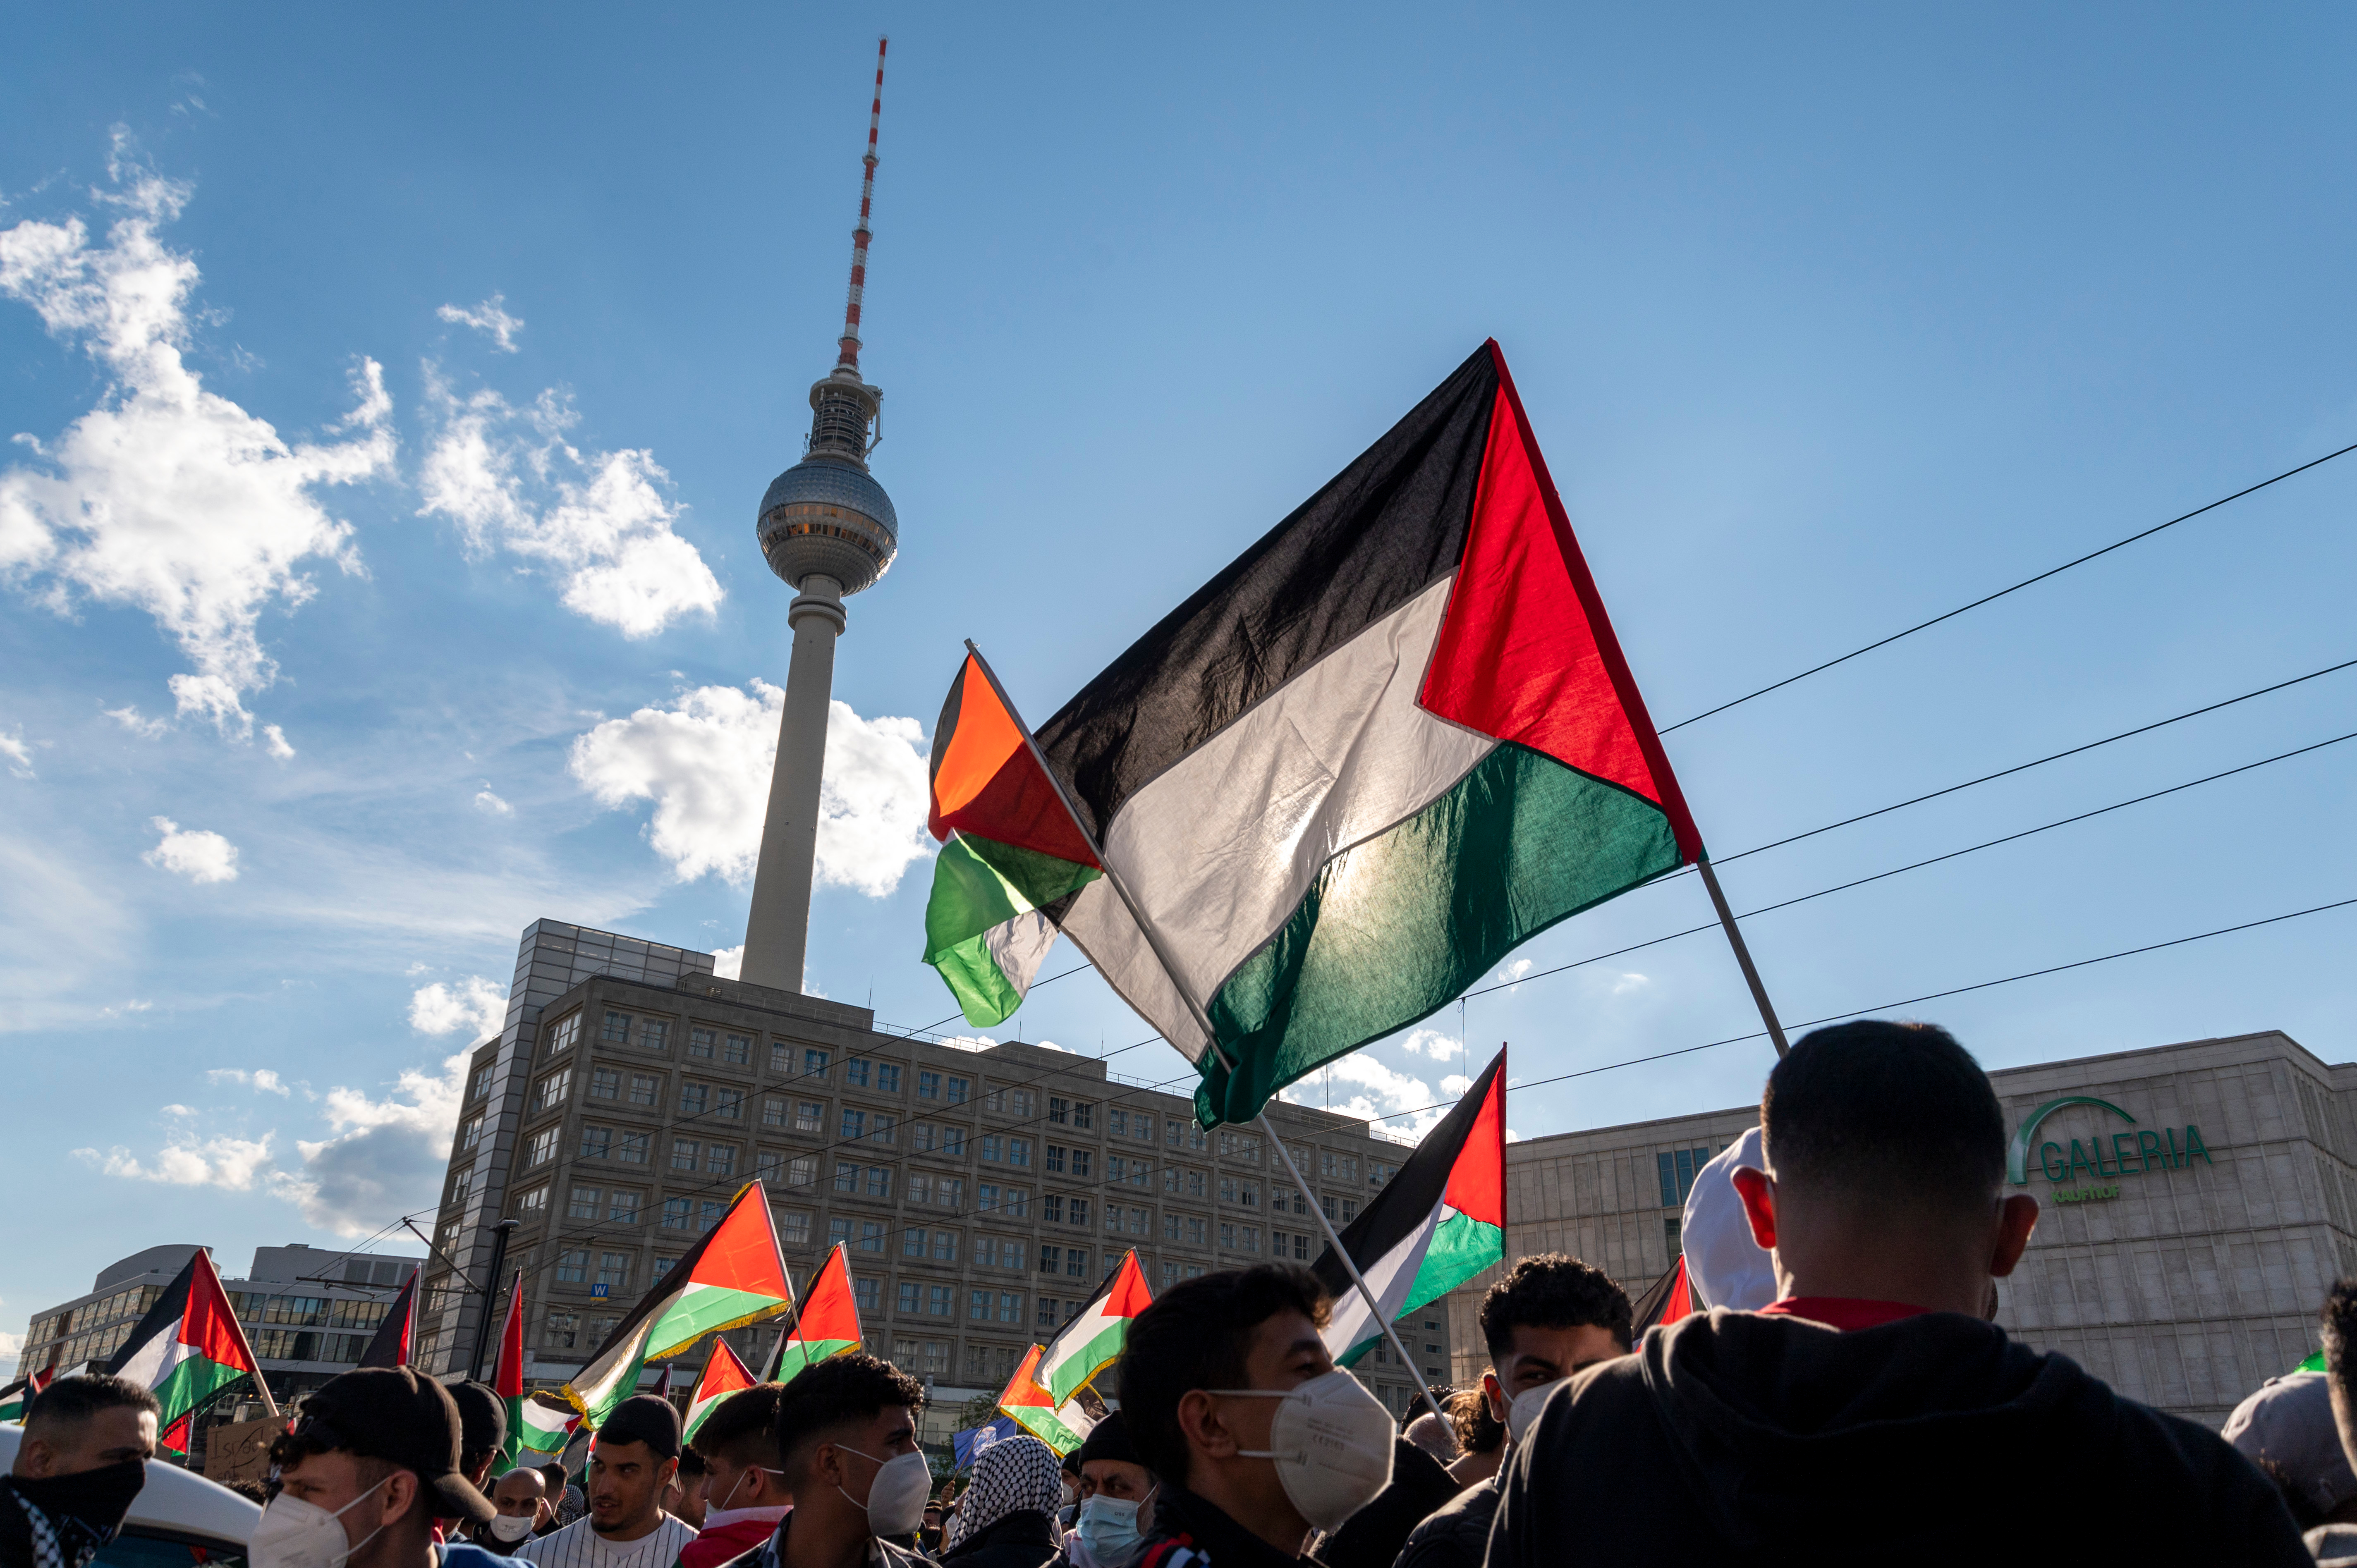 הפגנה פרו-פלסטינית בברלין (צילום: SHUTTERSTOCK)